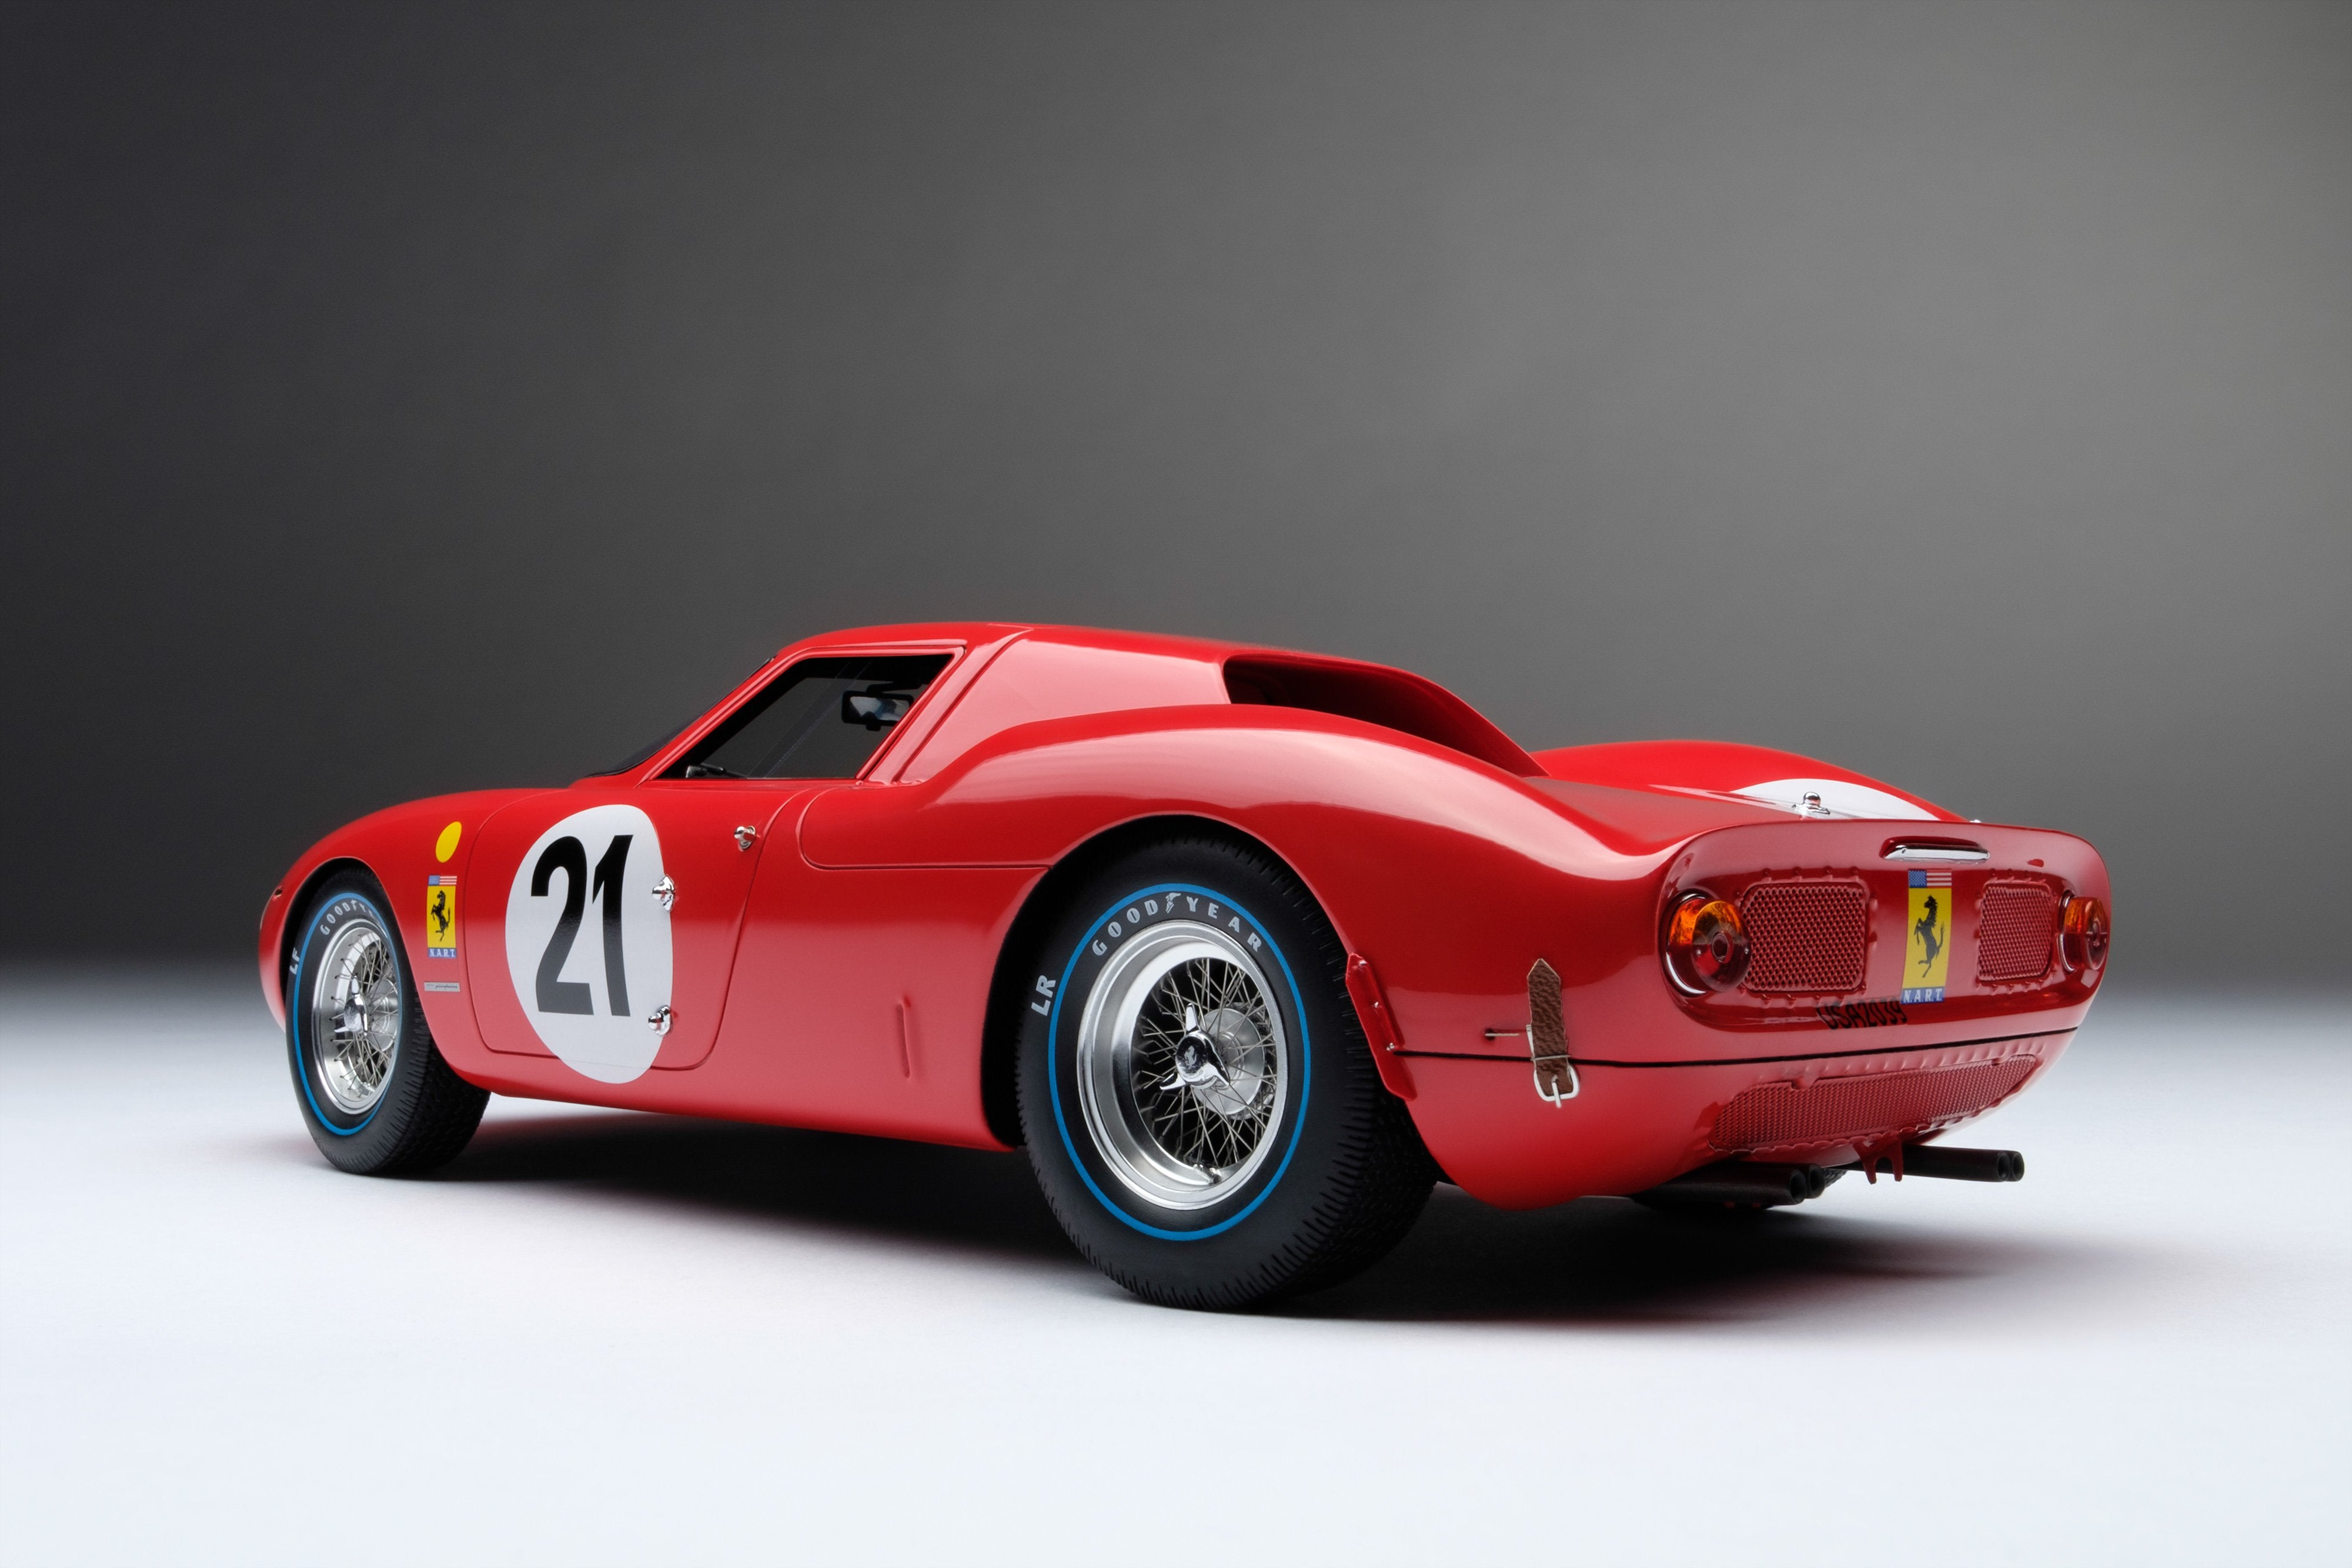 フェラーリ 250 LM - 24 時間 ル・マン 1965 – Amalgam Collection